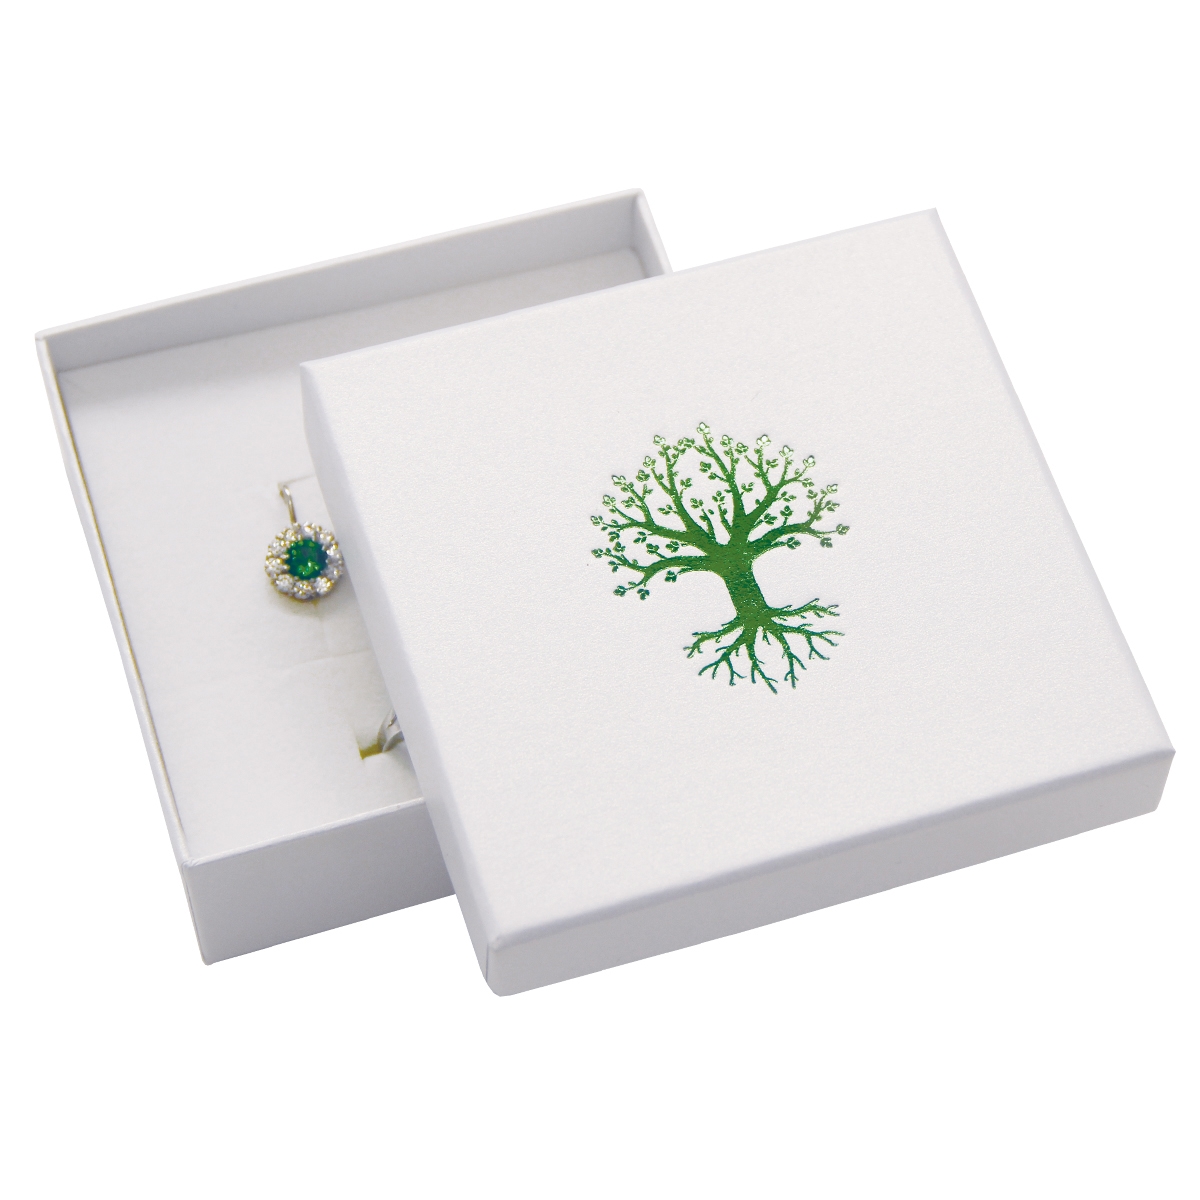 Darčeková krabička na súpravu, zelený strom života